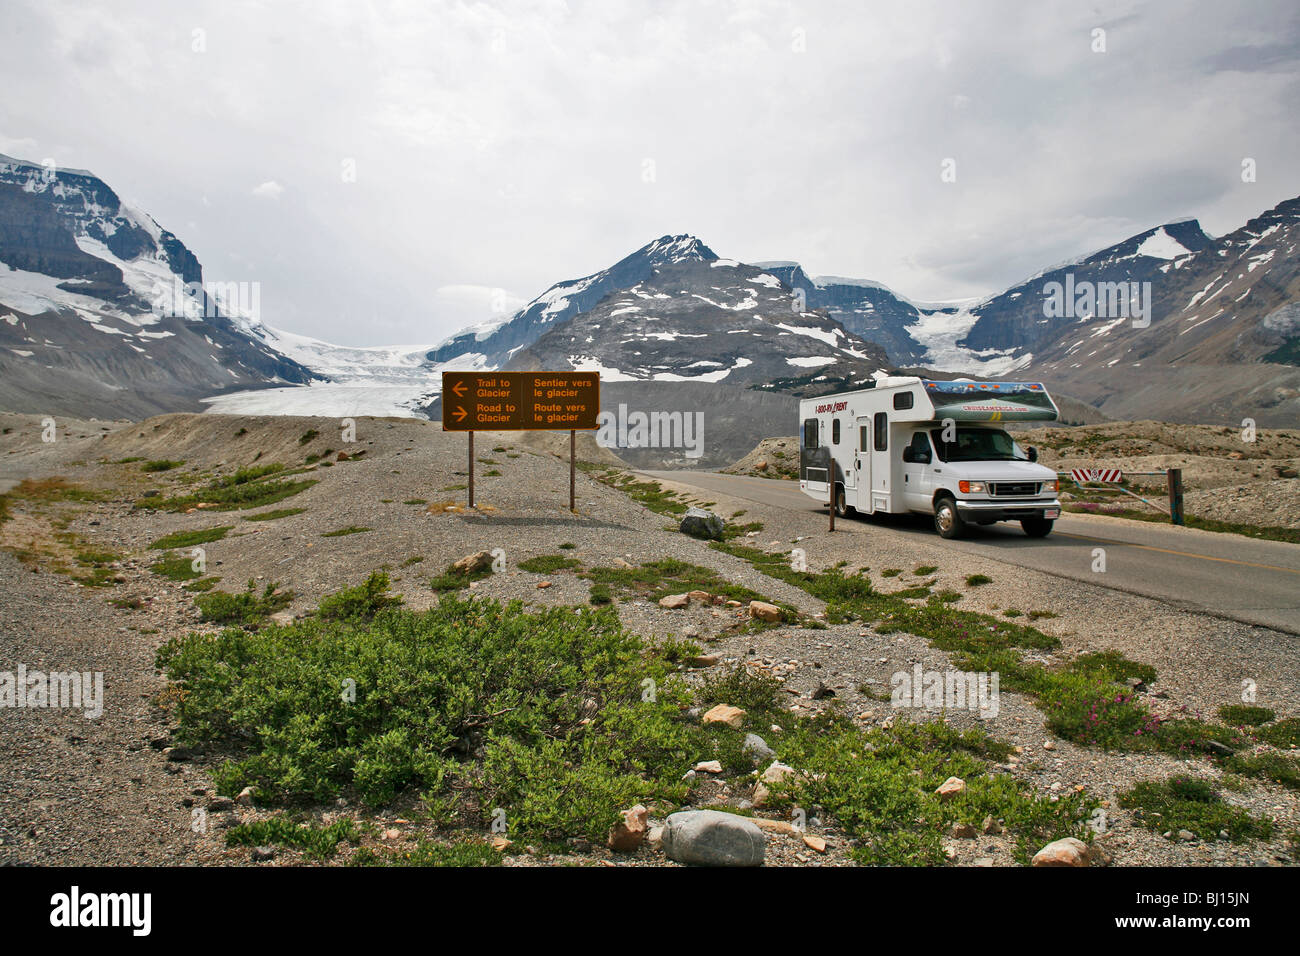 Camping-van, glacier Athabasca, Jasper National Park, Alberta, Canada Banque D'Images